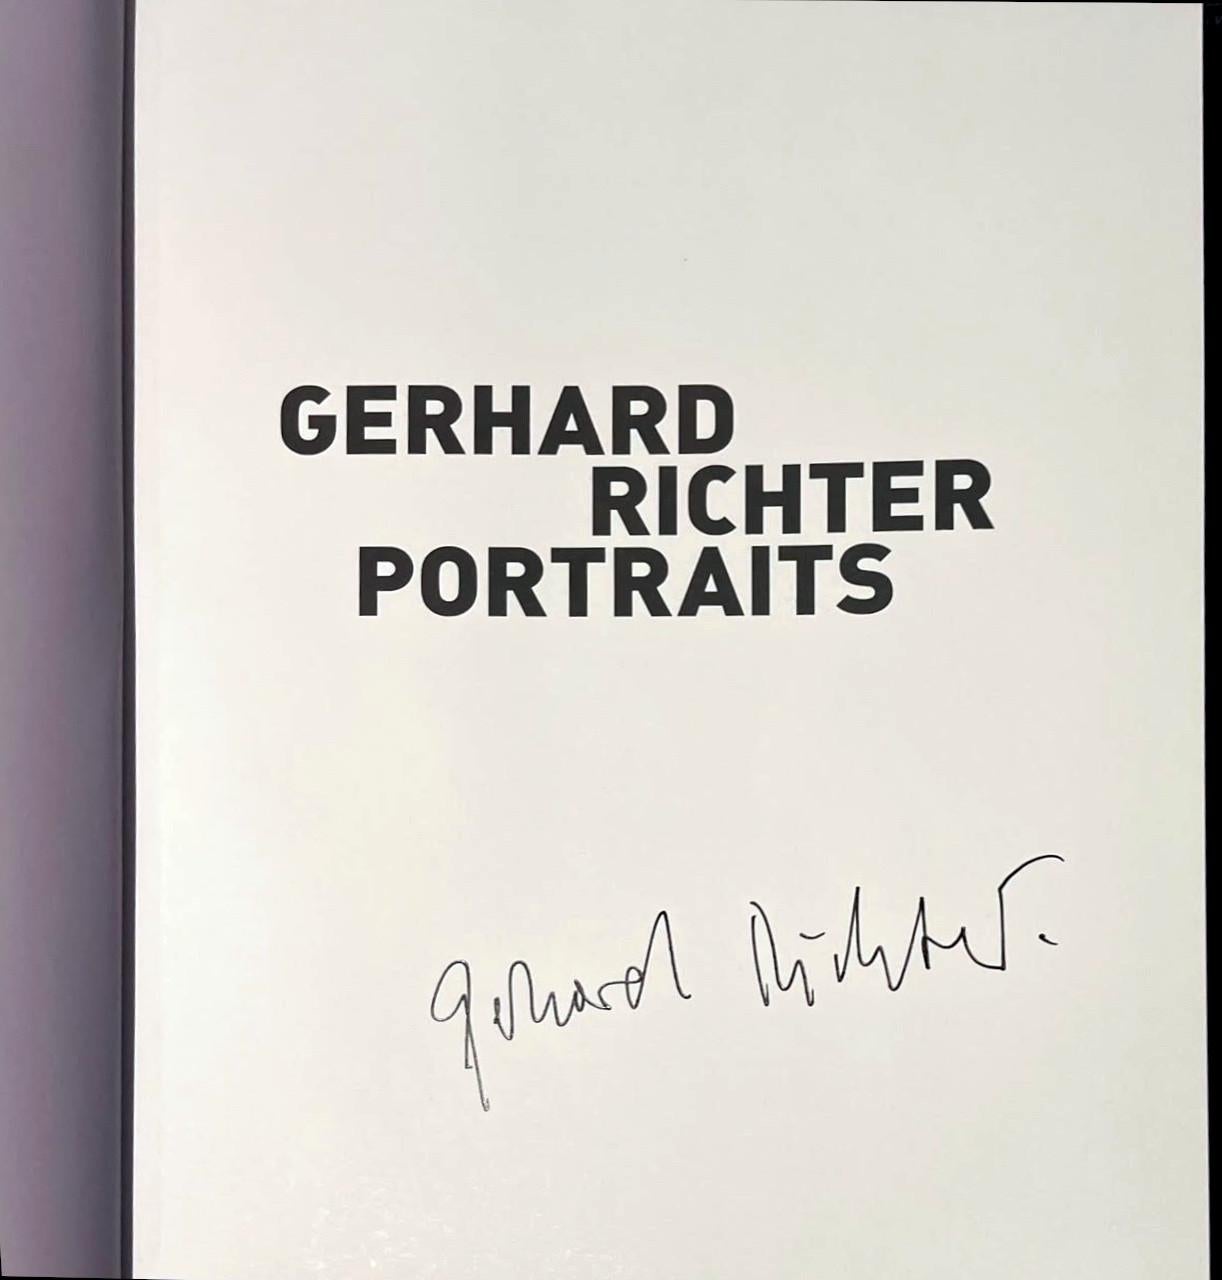 Gerhard Richter
PORTRAITS DE GERHARD RICHTER (exemplaire officiel signé à la main), 2009
Monographie reliée avec jaquette (exemplaire officiel signé à la main)
Signé à la main par Gerhard Richter sur la page de titre ; porte un bandeau rouge sur le